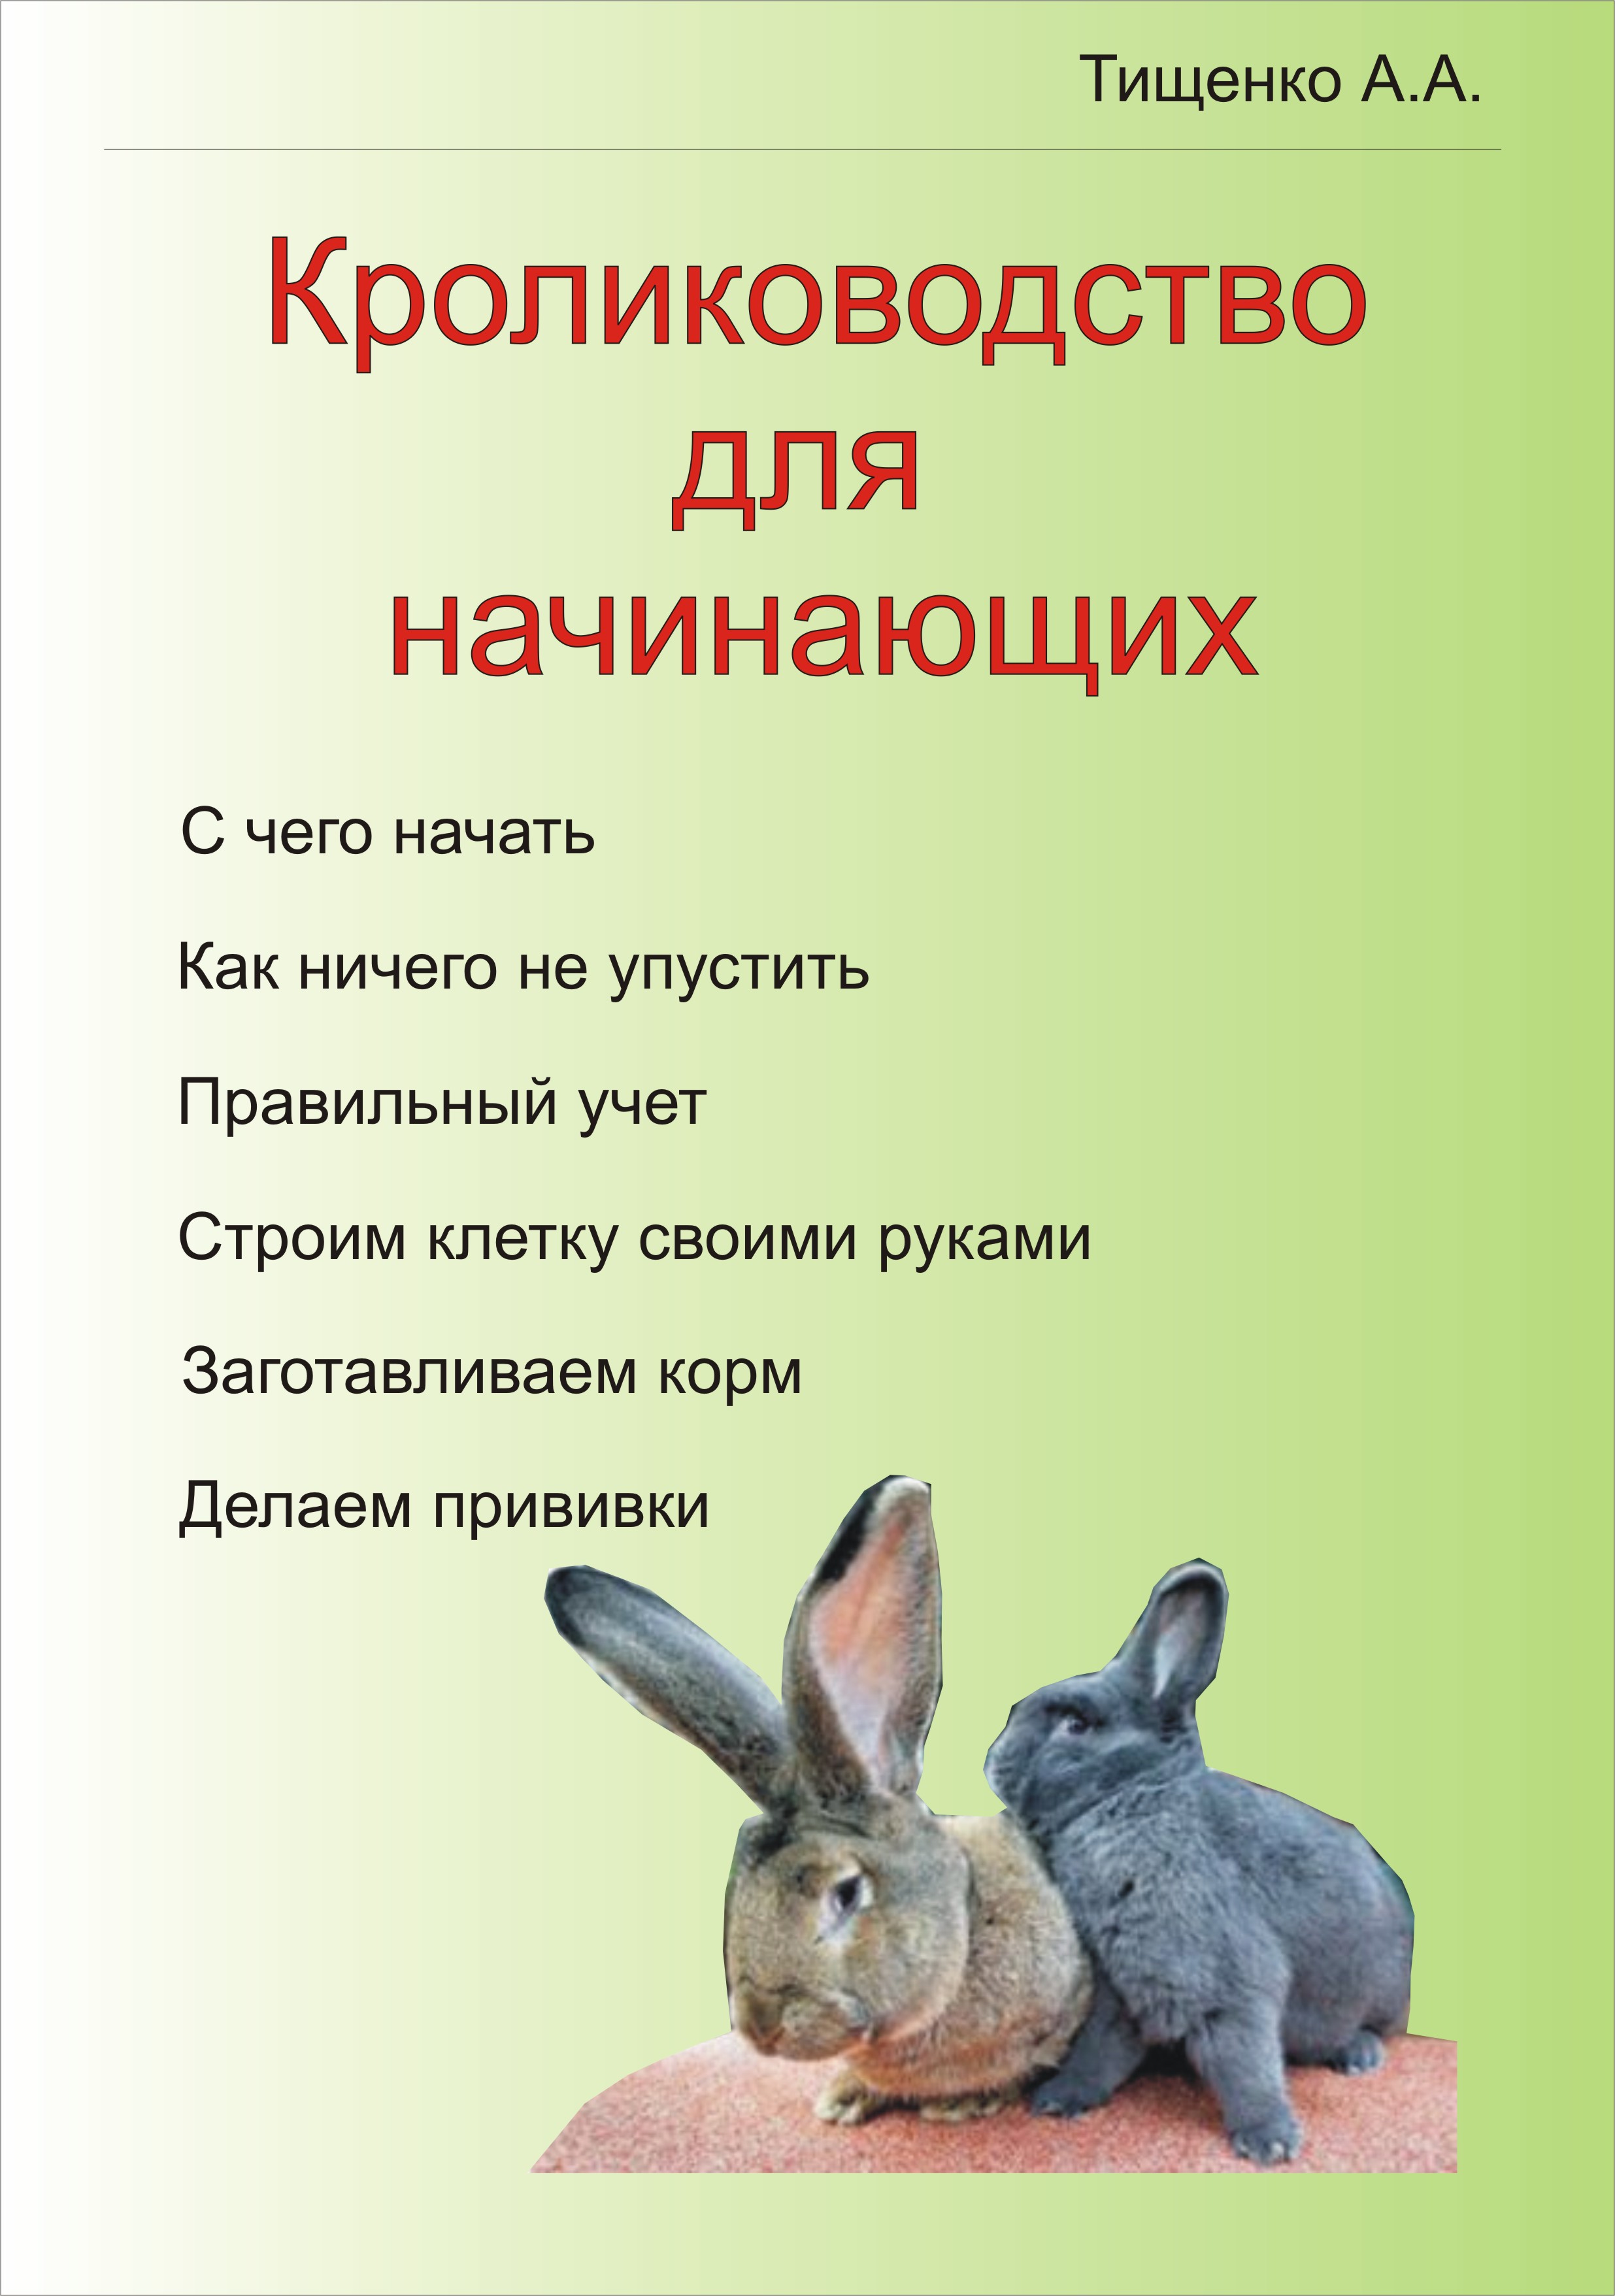 Книги о кролиководстве скачать бесплатно